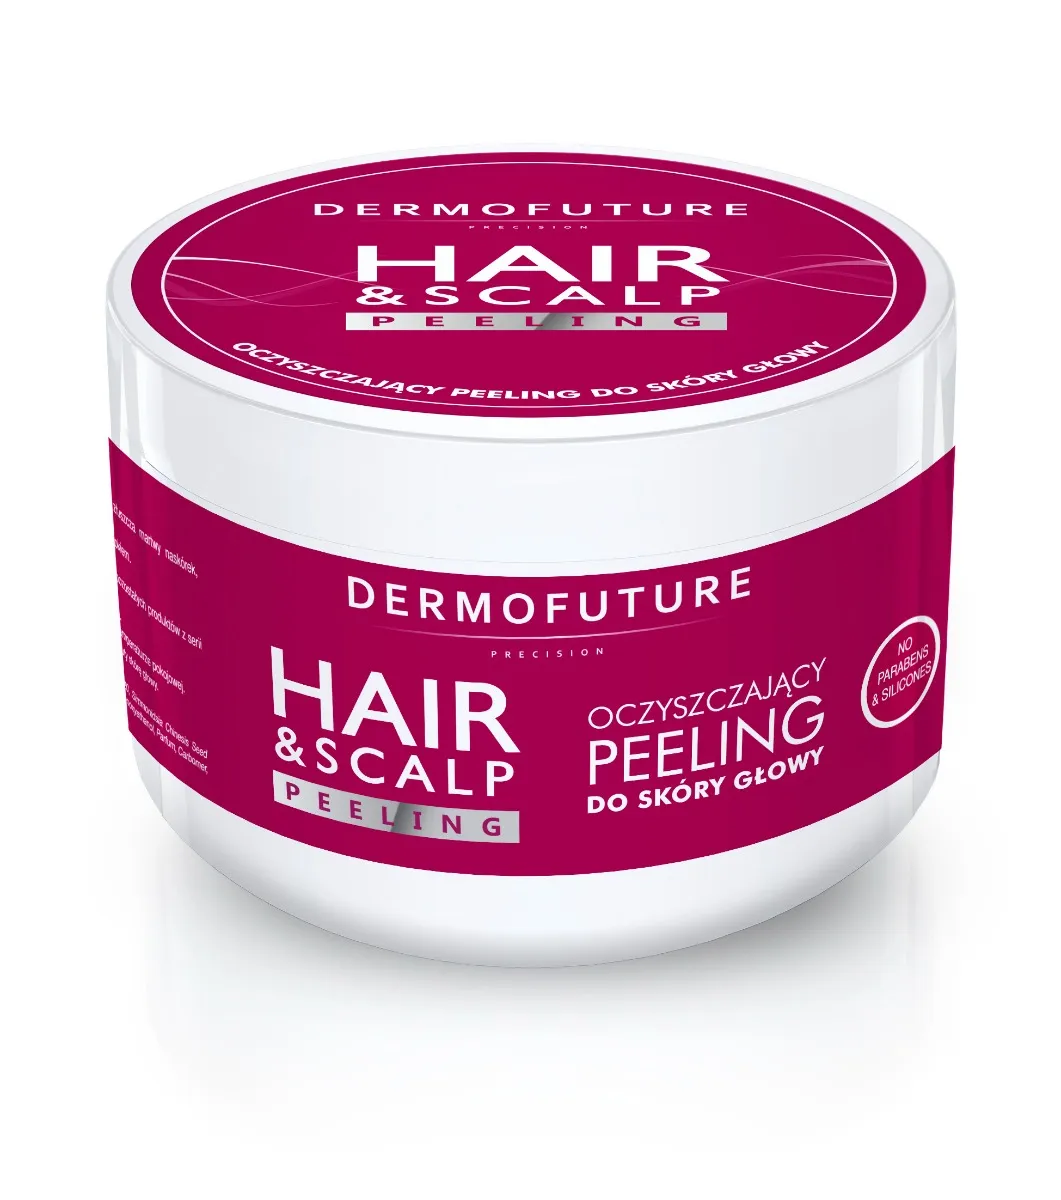 Dermofuture Hair & Scalp oczyszczający peeling do skóry głowy, 300 ml